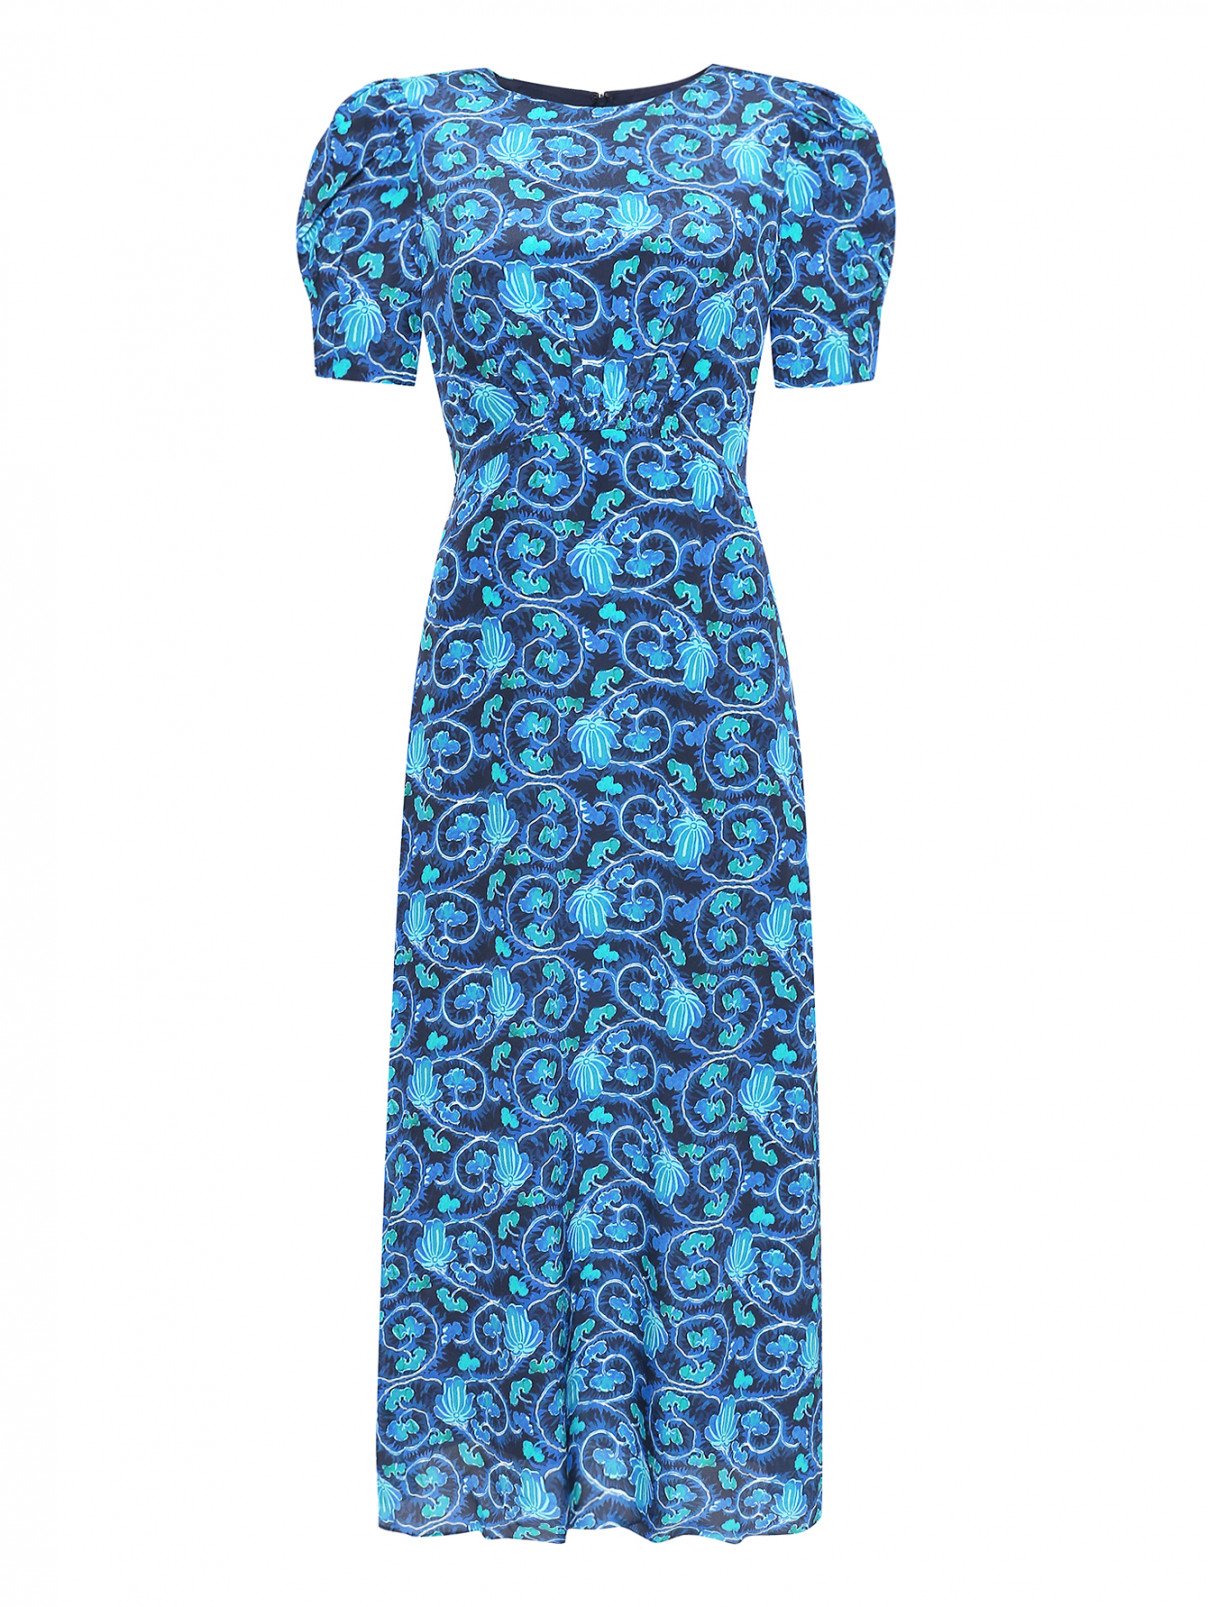 Платье из шелка с цветочным узором Saloni  –  Общий вид  – Цвет:  Синий